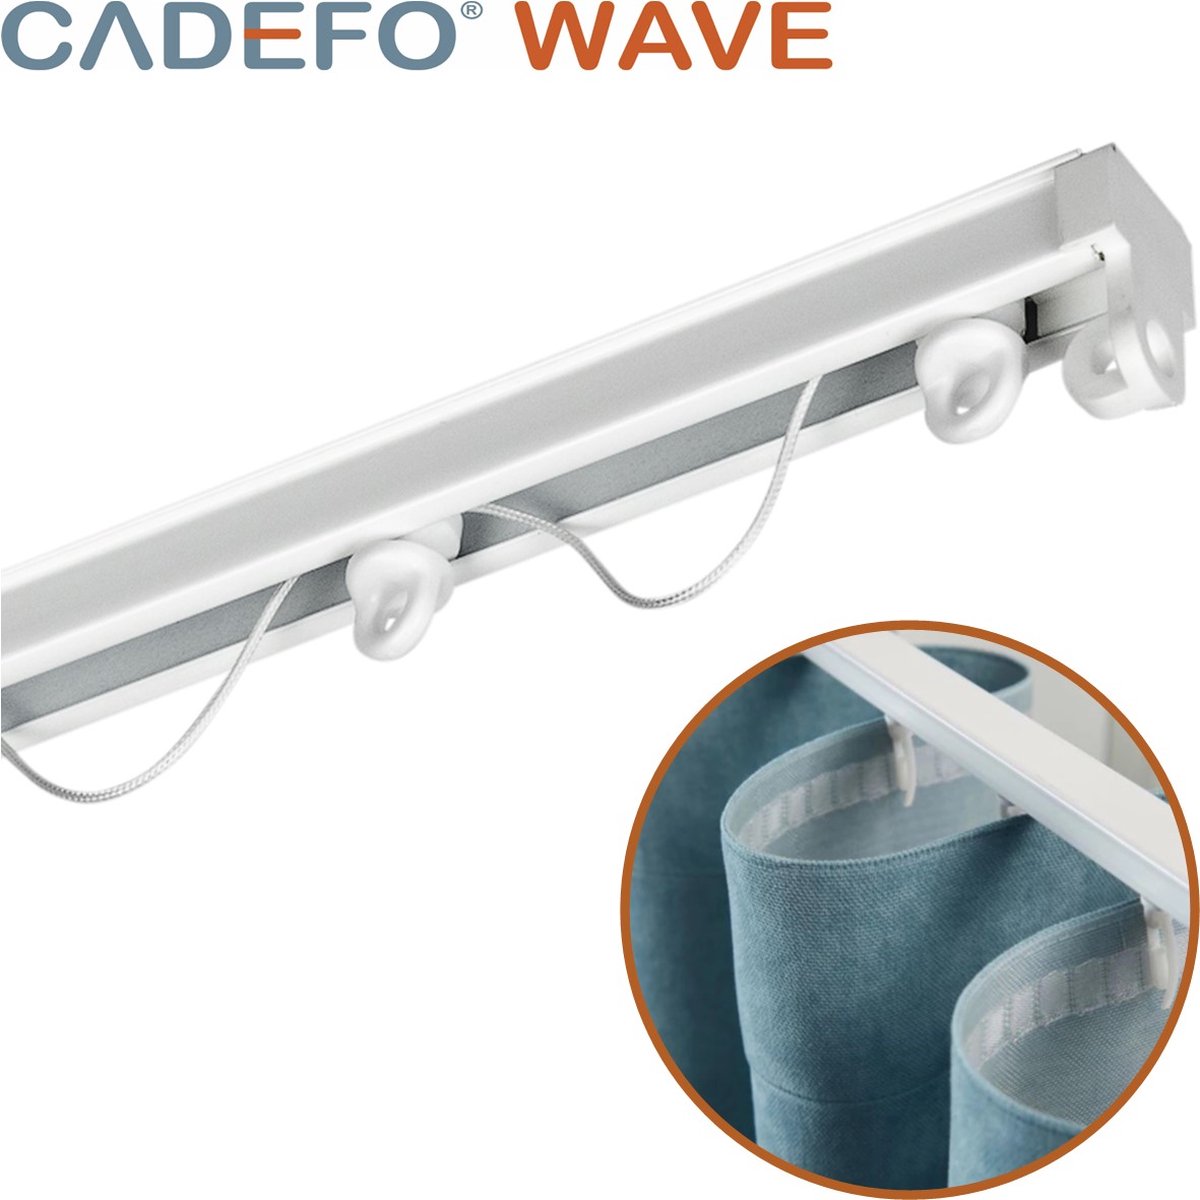 CADEFO WAVE (451 - 500 cm) Gordijnrails - Compleet op maat! - UIT 1 STUK - Leverbaar tot 6 meter - Plafondbevestiging - Lengte 466 cm